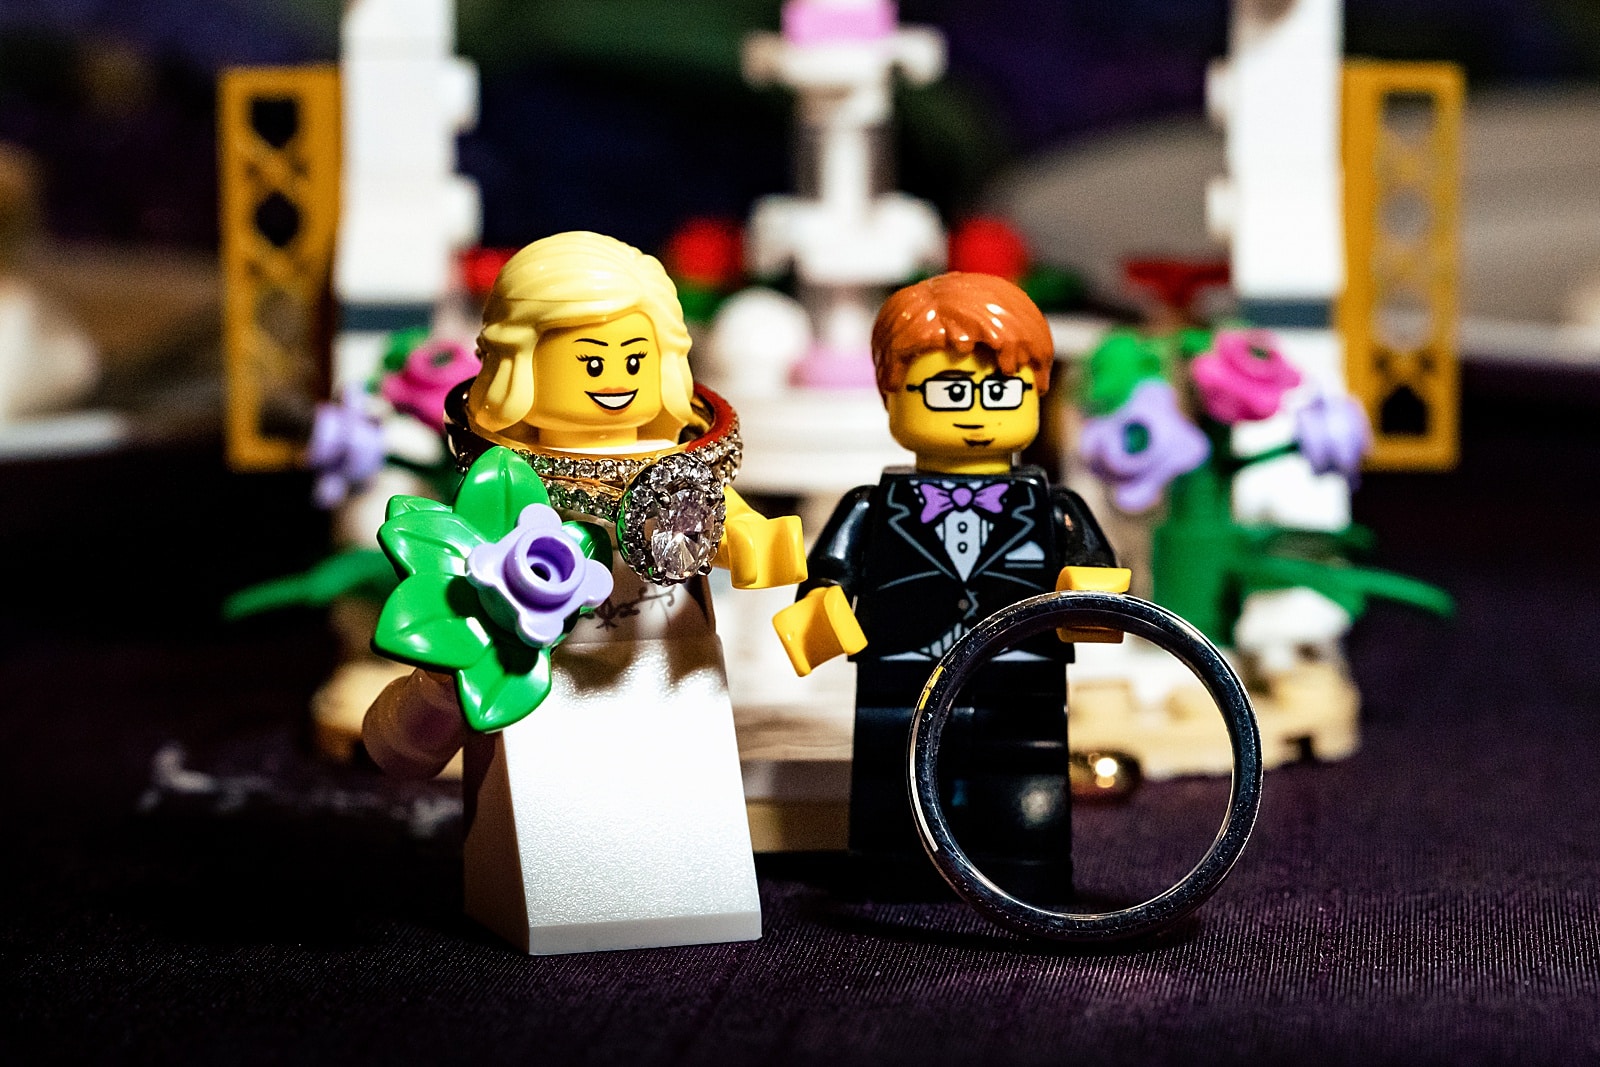 Lego cake topper at a fun wedding